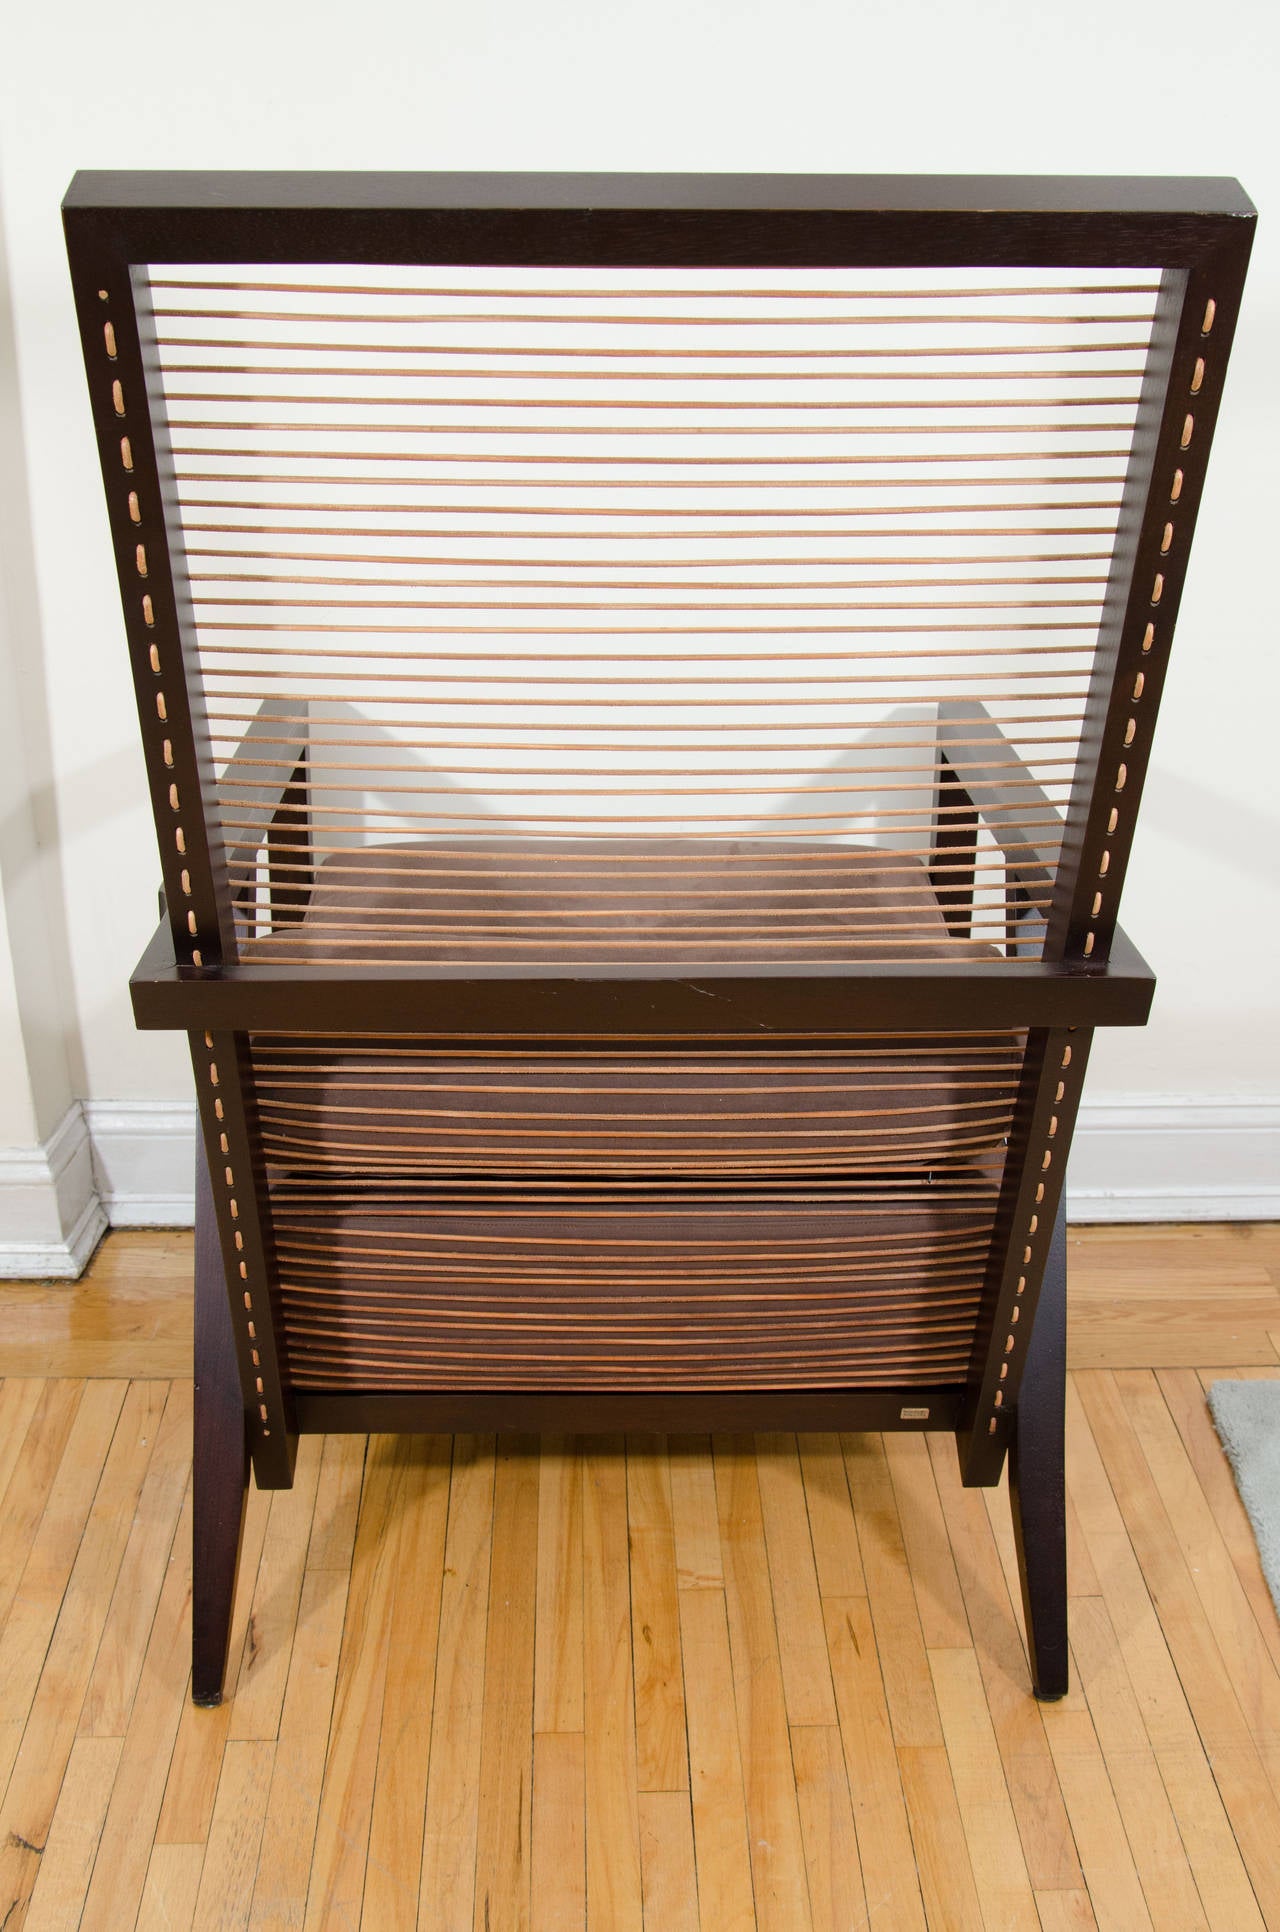 Contemporary Pierantonio Bonacina Astoria High Back Lounge Chair